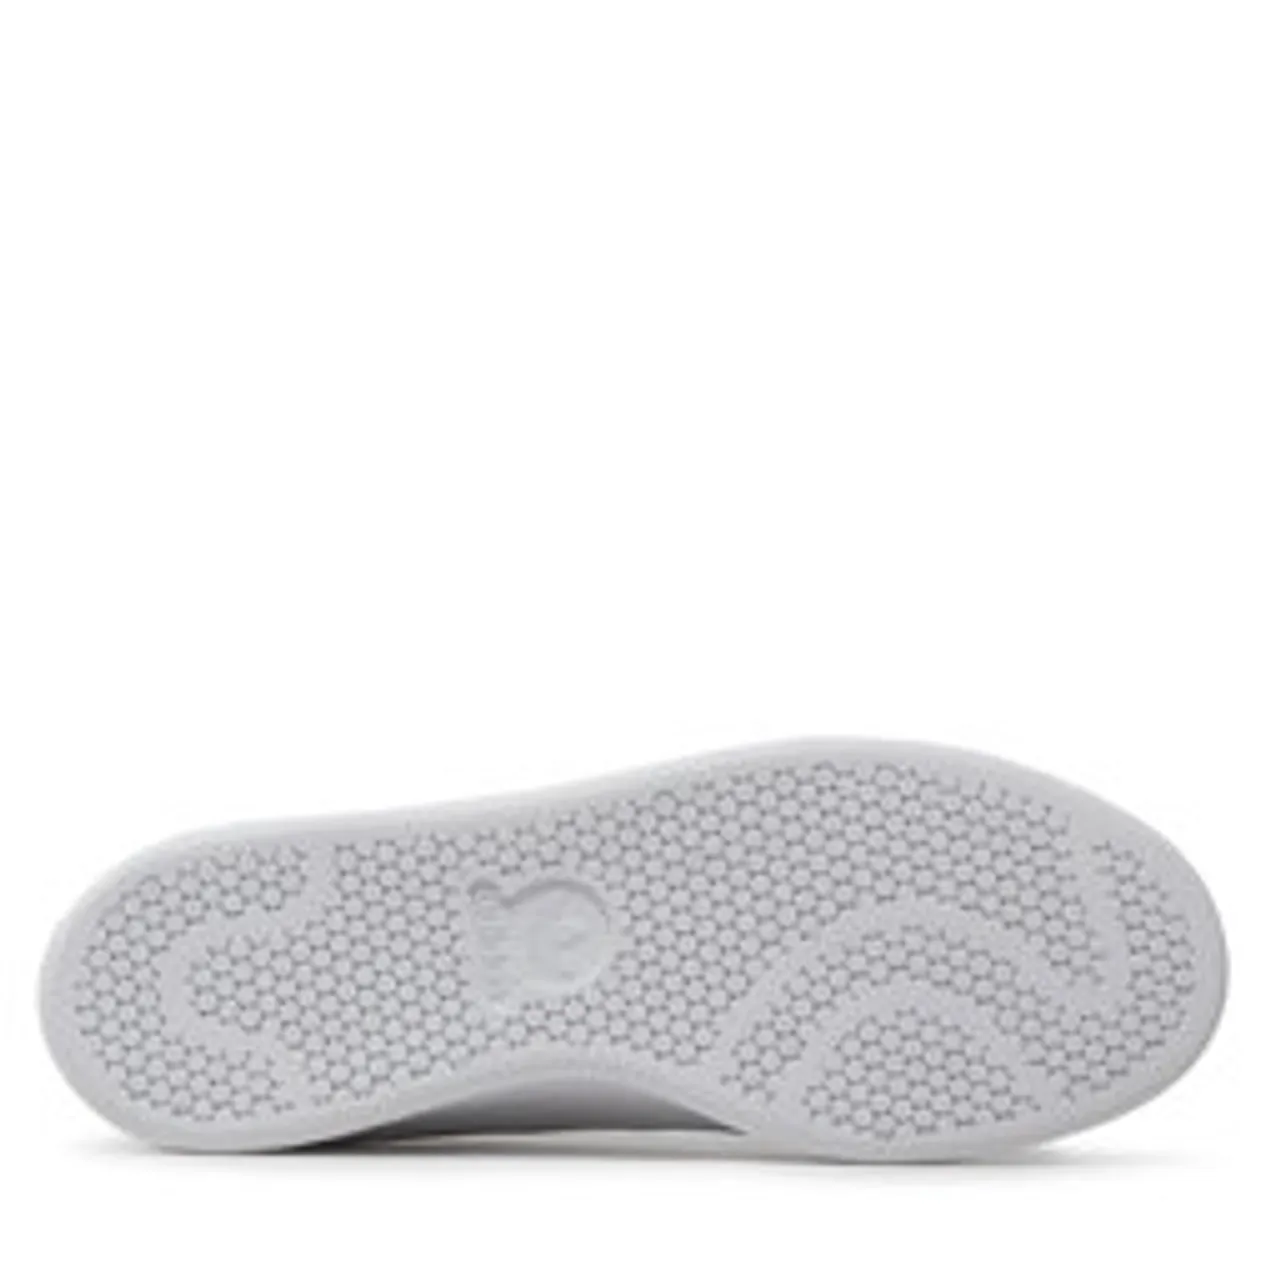 Schuhe adidas Stan Smith GW0571 Ftwwht/Halblu/Acired